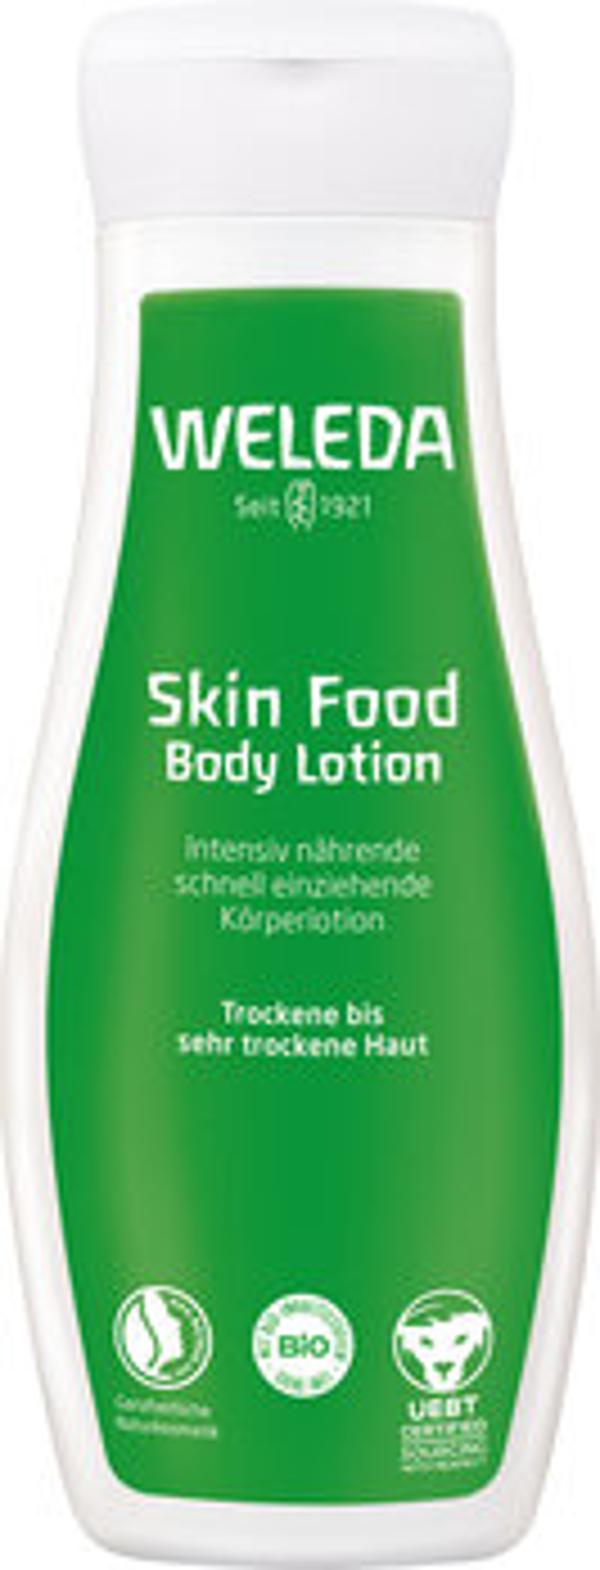 Produktfoto zu Skin Food Body Lotion